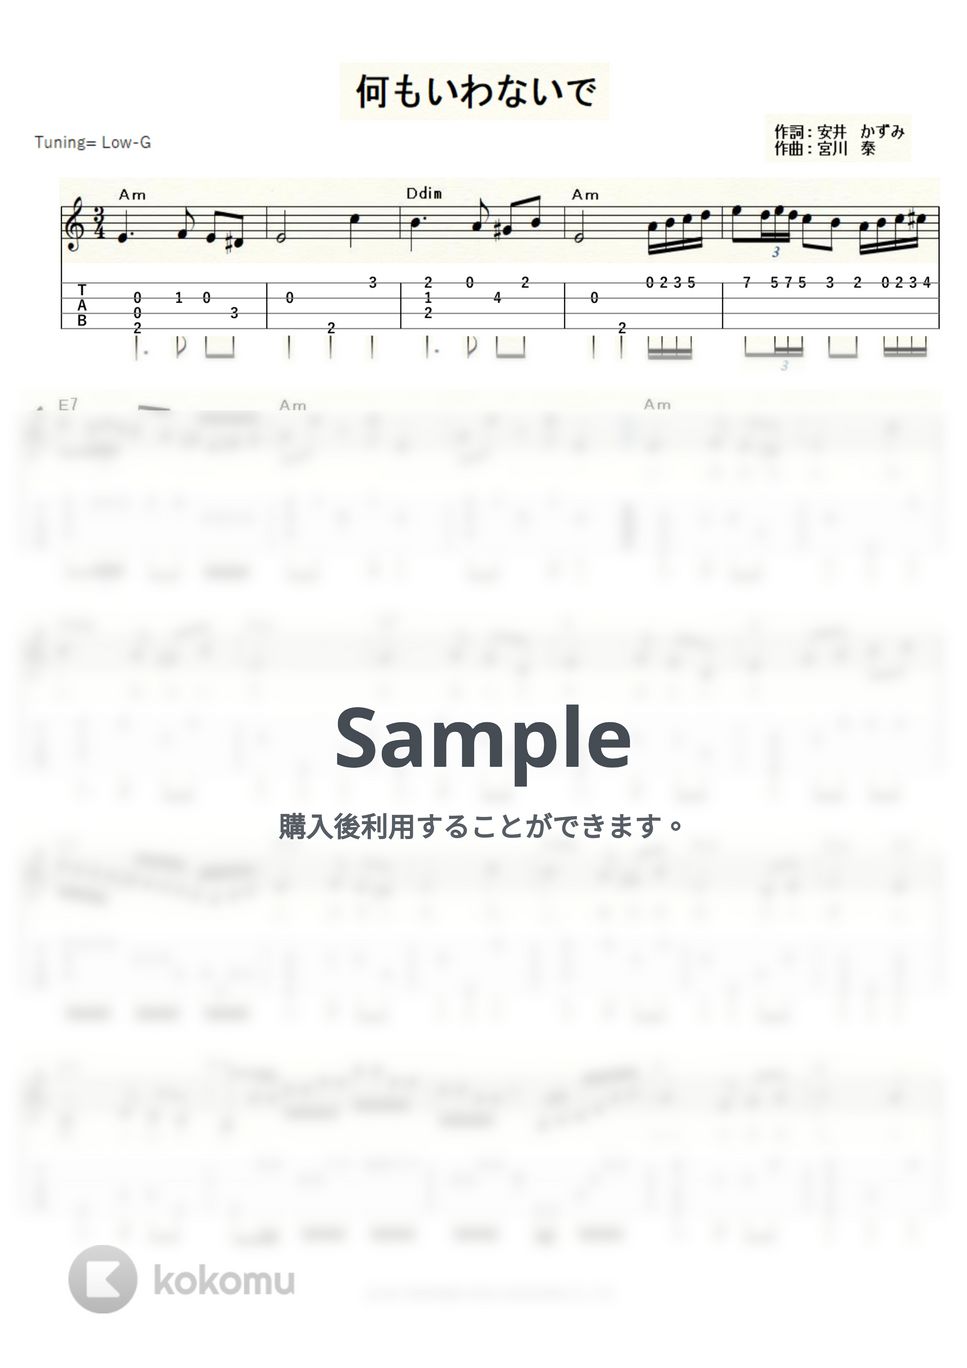 園 まり - 何もいわないで (ｳｸﾚﾚｿﾛ/Low-G/中級) by ukulelepapa